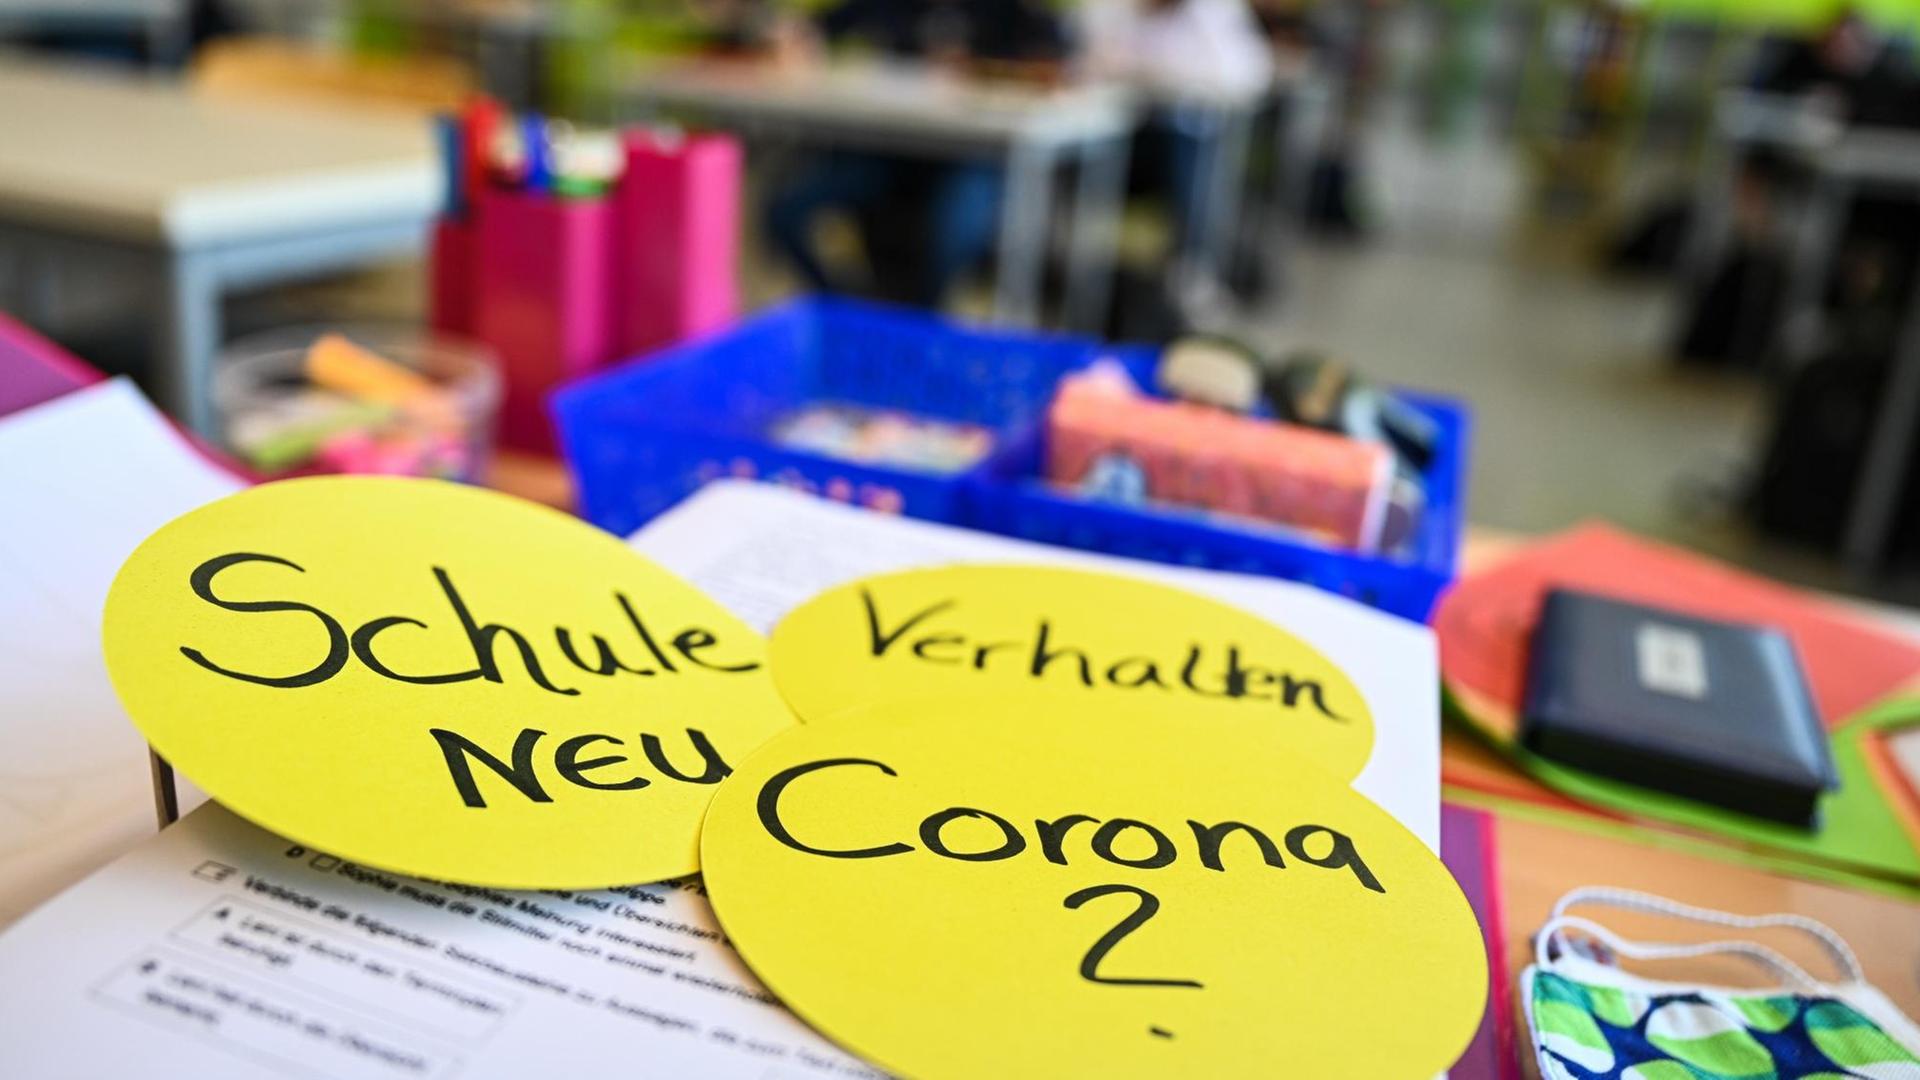 Auf dem Lehrerpult in einem Klassenzimmer liegen drei kreisrunde Papierschilder mit der Aufschrift: "Schule neu", "Verhalten" und "Corona ?", aufgenommen in der Achtalschule in Baienfurt in Baden-Württemberg im Mai 2020